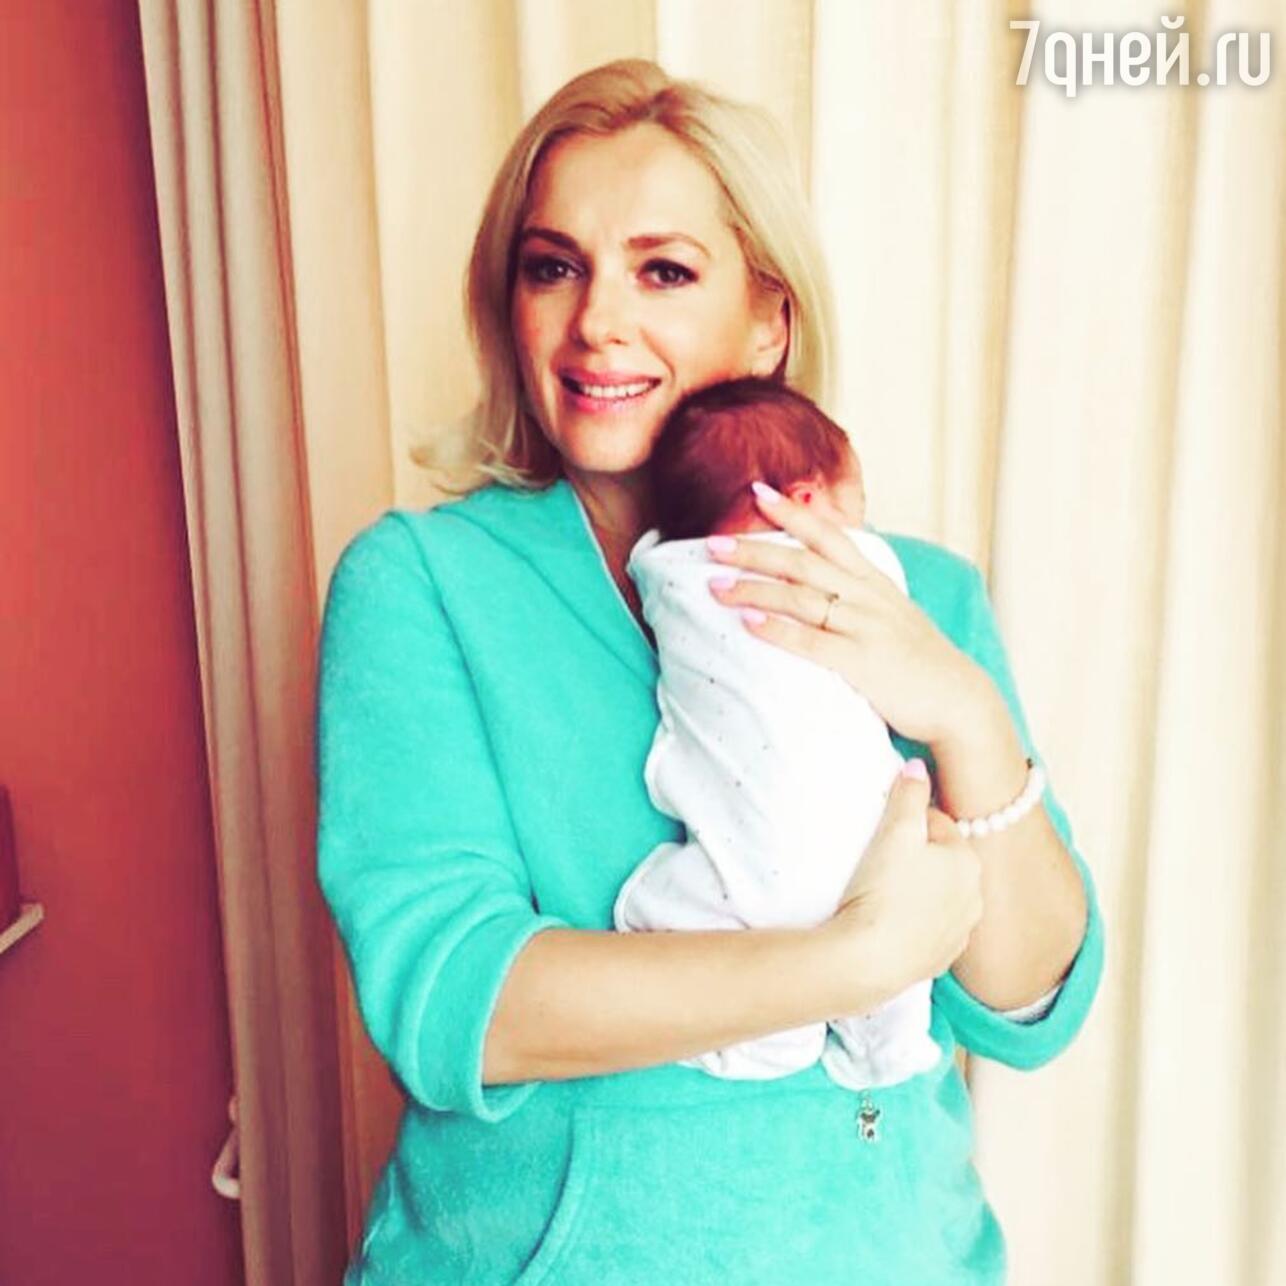 Мария Порошина с новорожденным сыном